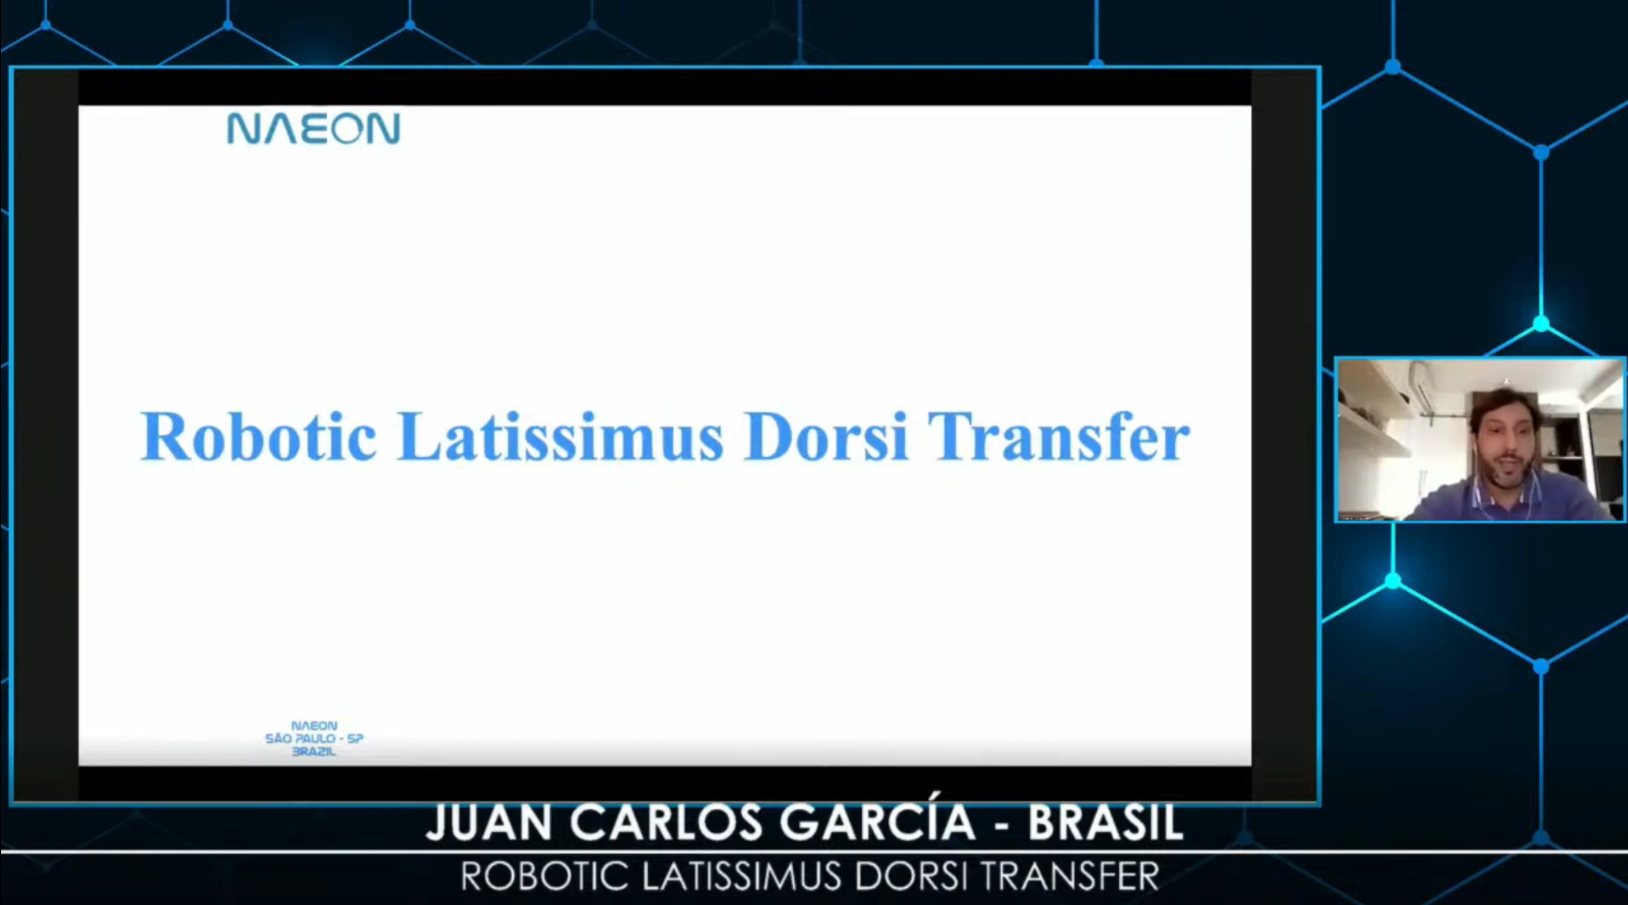 Robotic Latissimus Dorsi Tansfer - Dr Juan Carlos Garcia